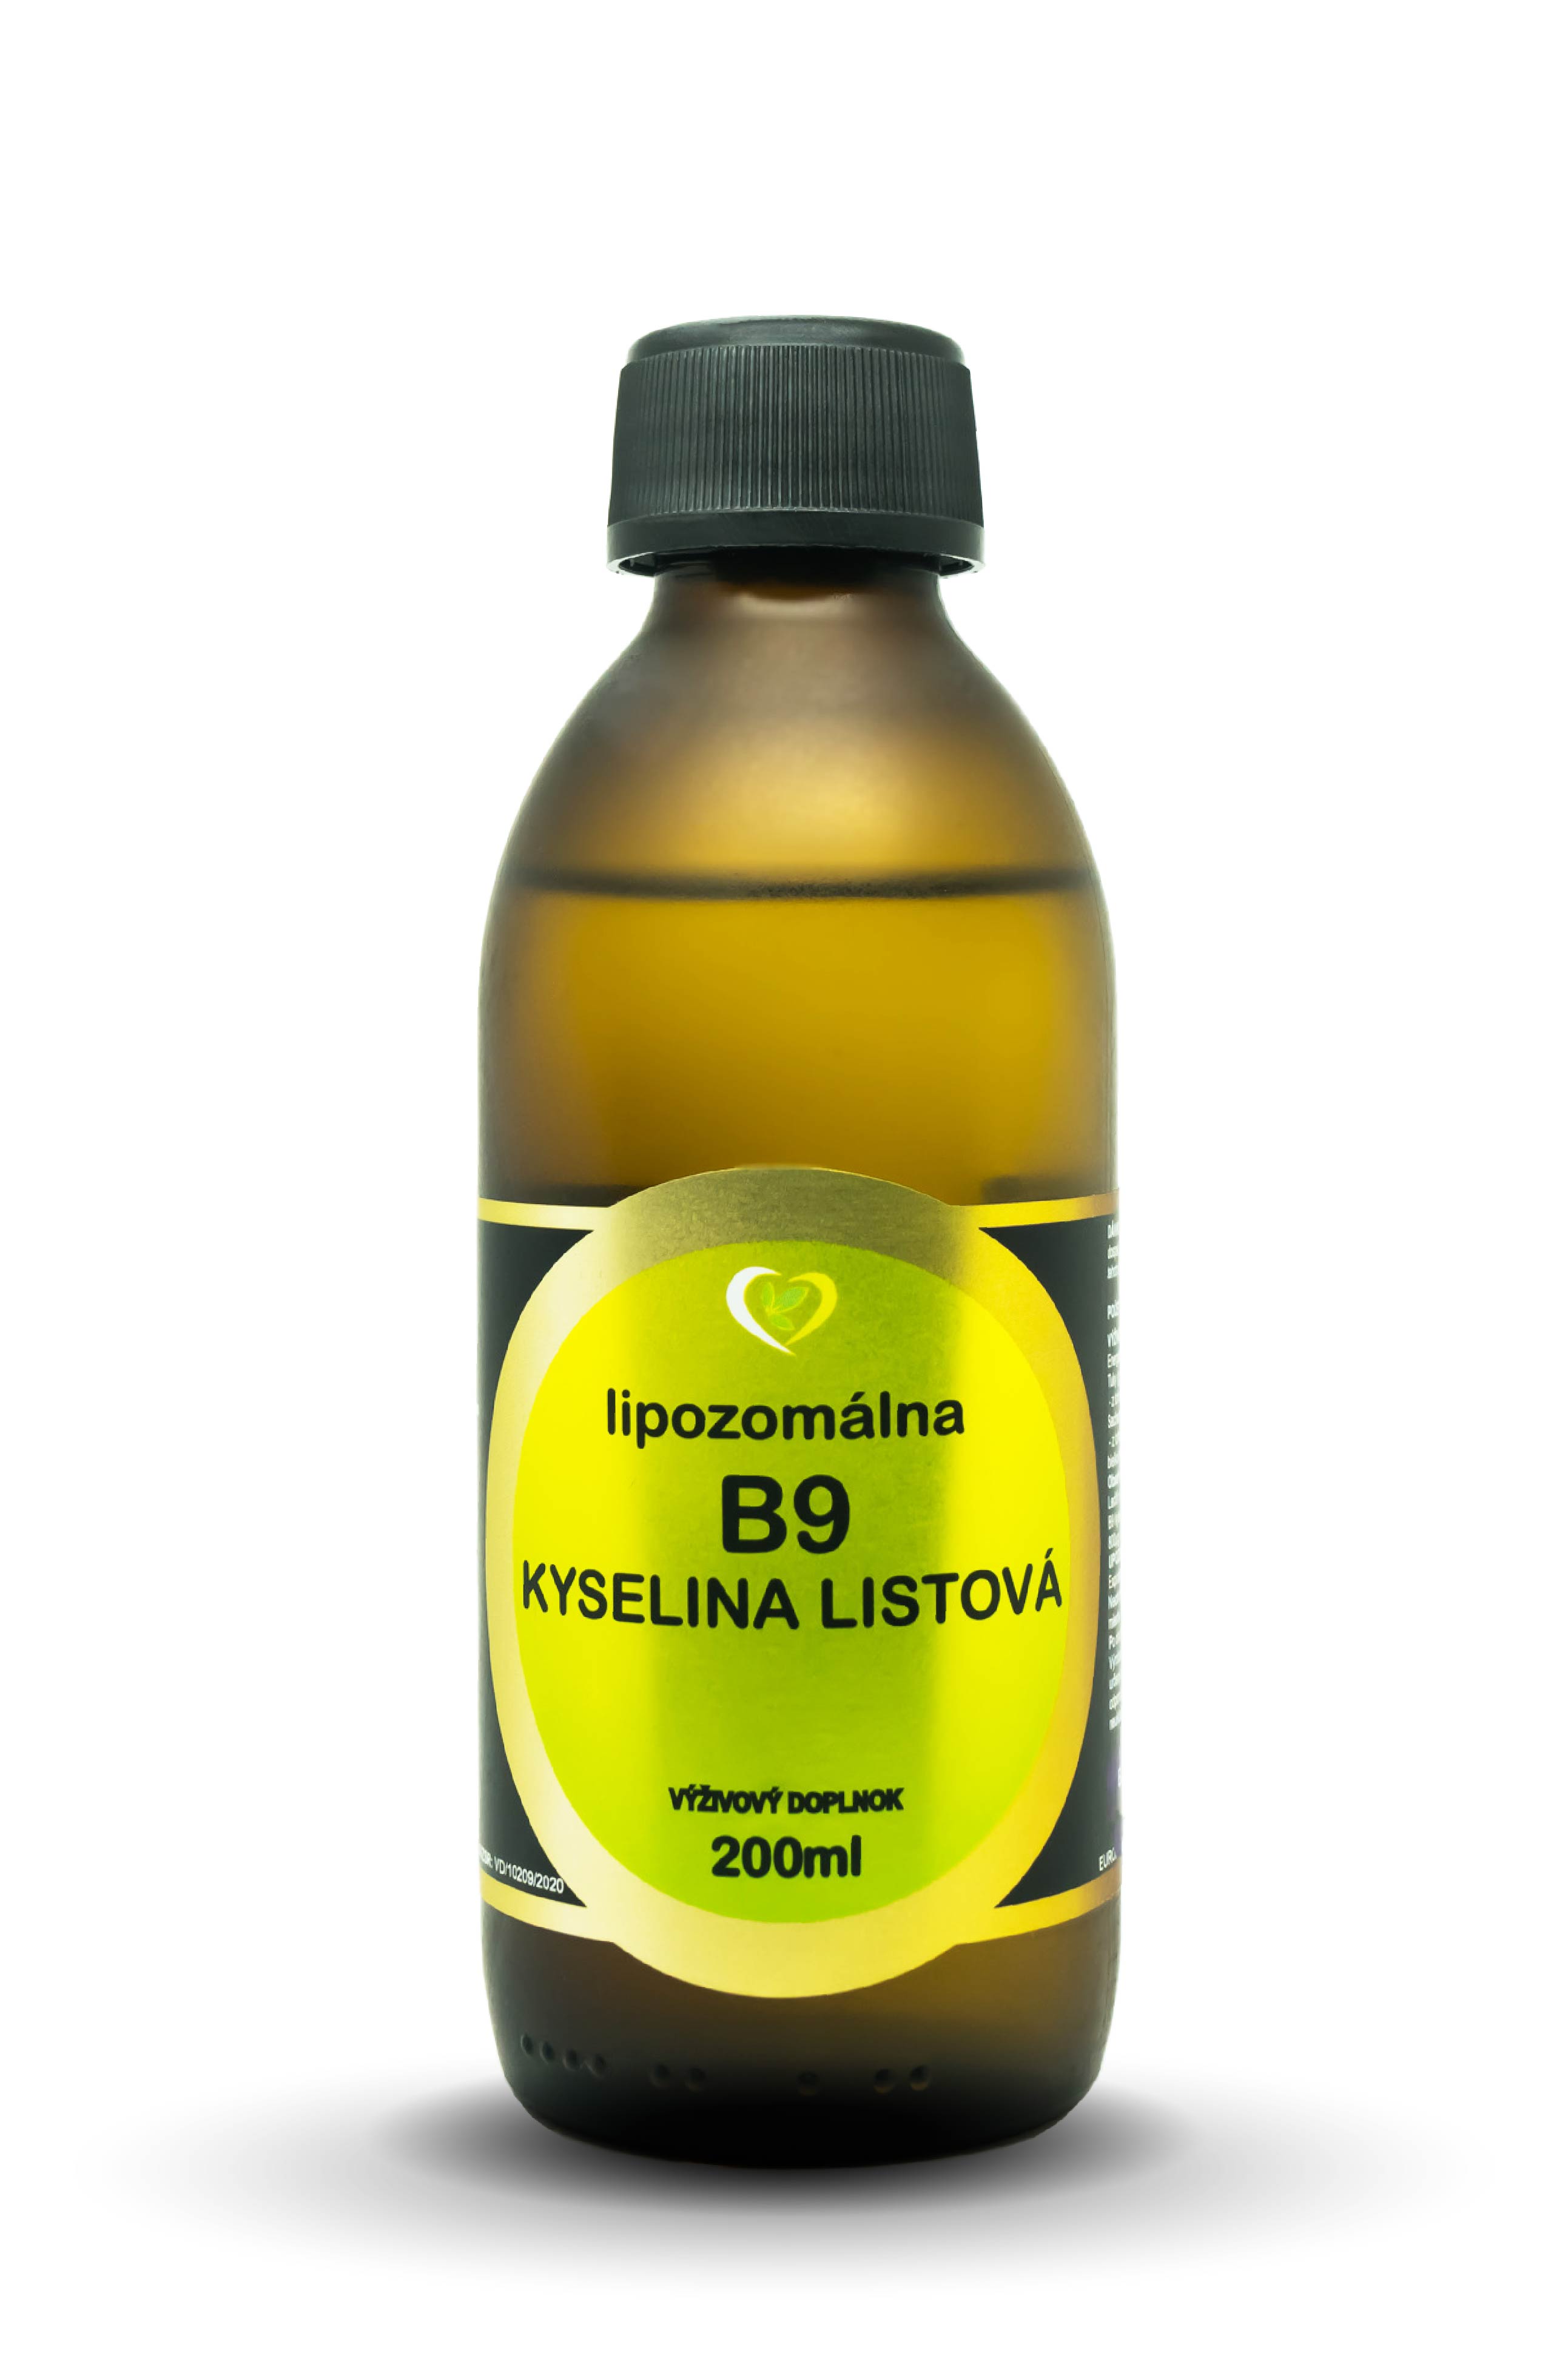 Lipozomálna KYSELINA LISTOVÁ je prírodná aktívna forma kyseliny listovej, čiže vitamínu B9 – tzv. folát, najnovšej 4.generácie v...